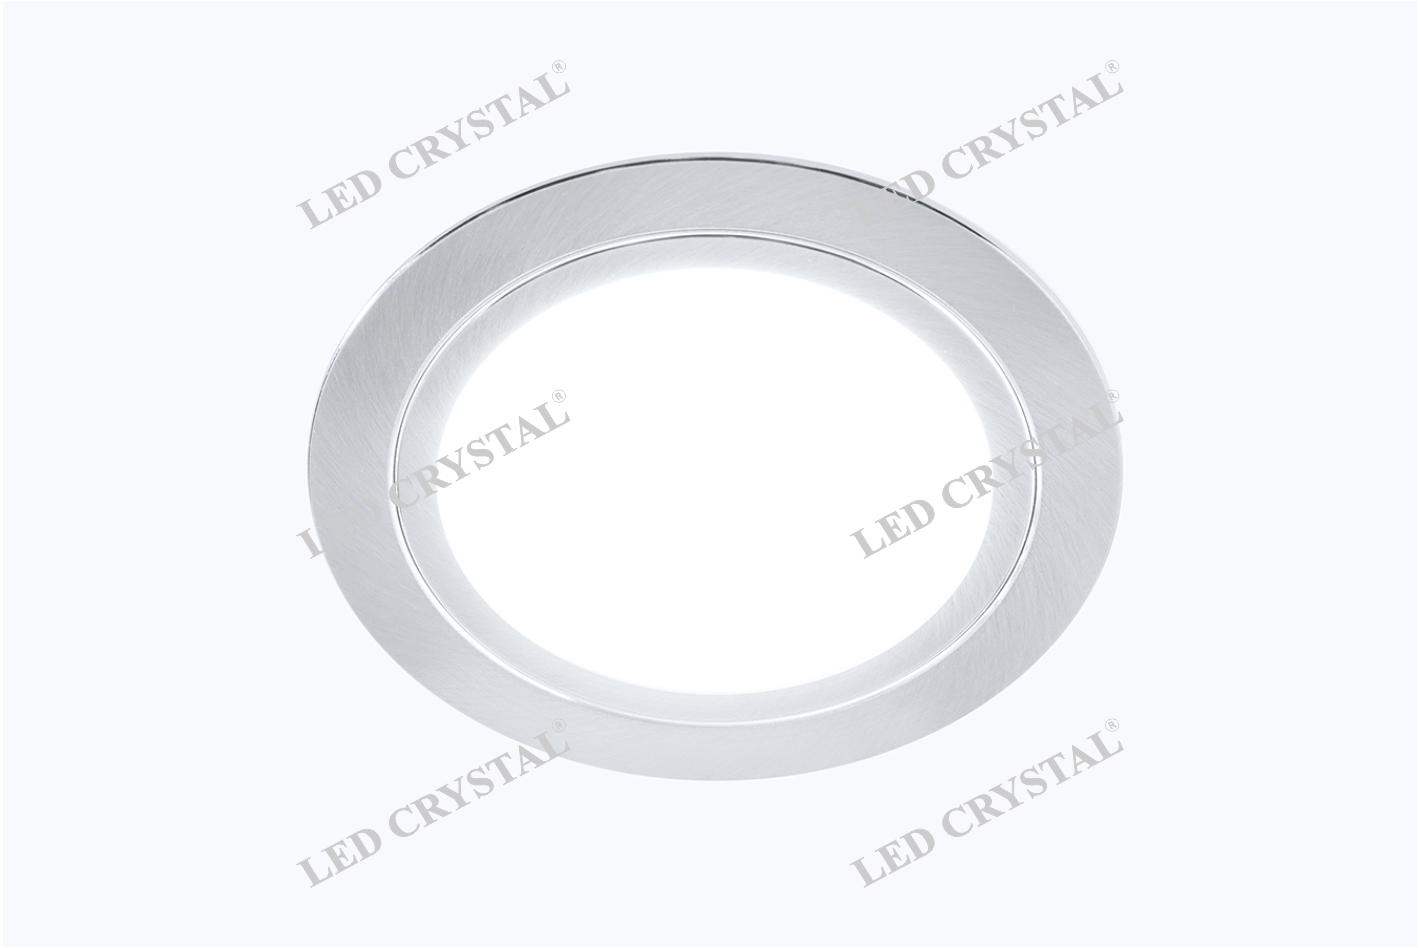 LED CRISTAL Светильник LED встраиваемый круглый D66мм, 220V, 3W, 6500К, 200лм, IP44, никель матовый